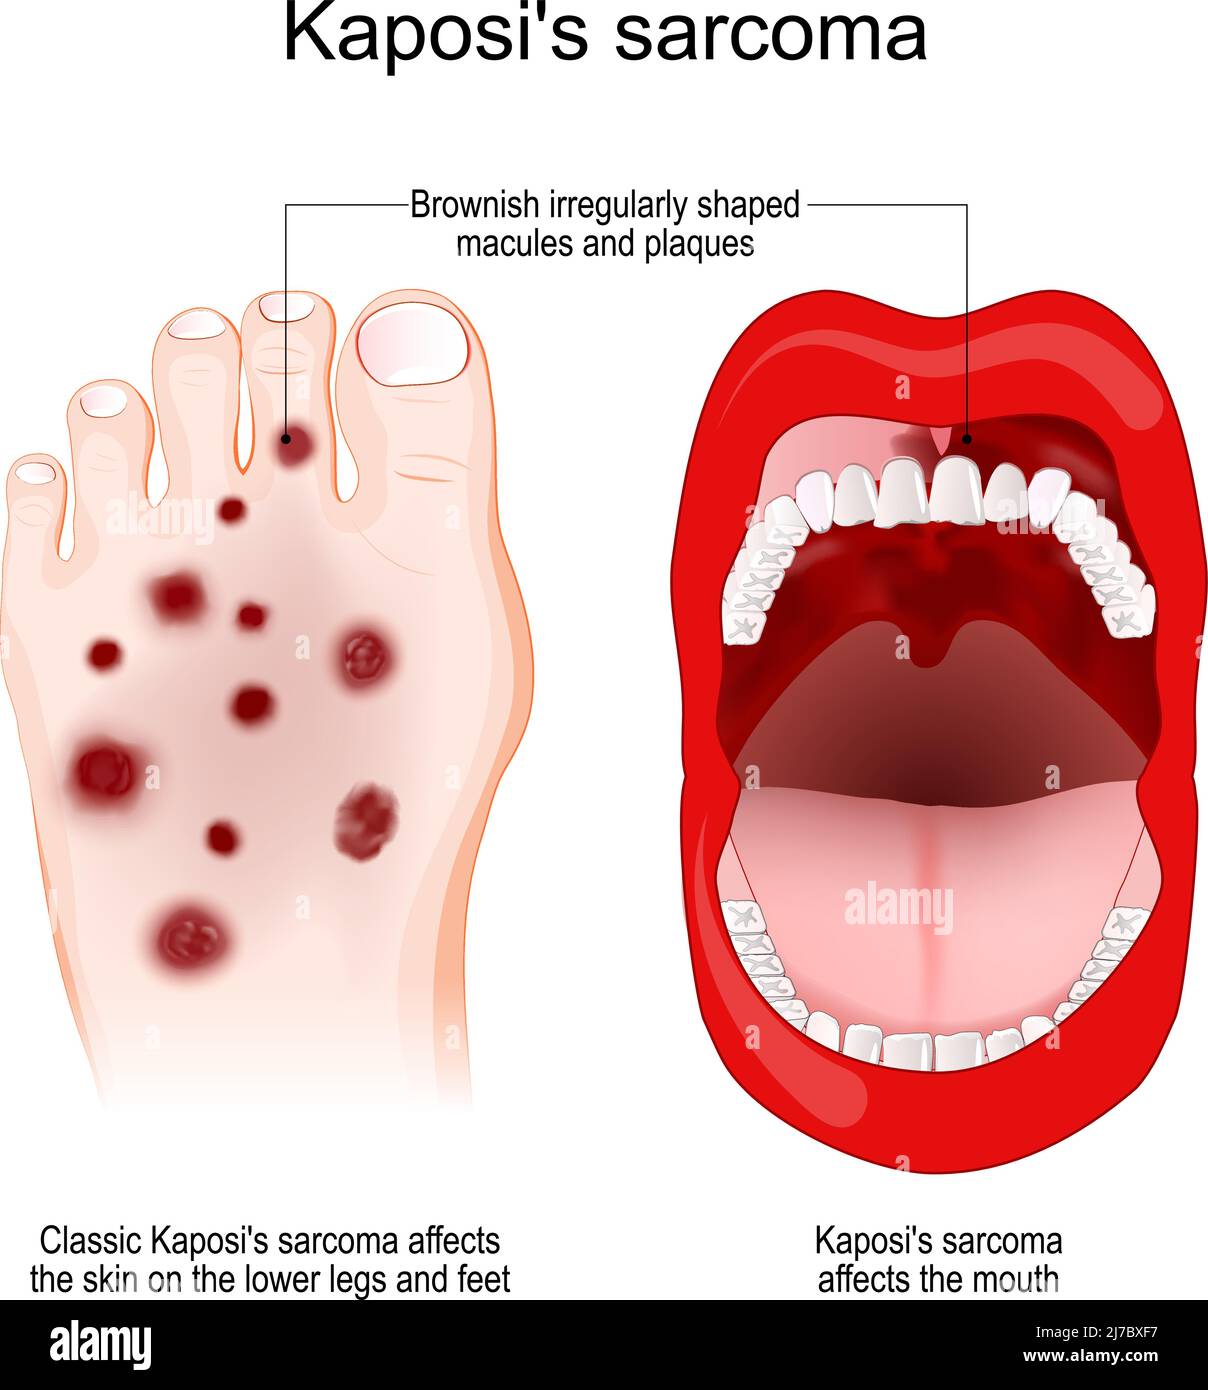 Le sarcome de Kaposi est un type rare de cancer causé par une infection par l'herpèsvirus humain. Le sarcome de Kaposi affecte la bouche et le pied. Symptôme de Kaposi Illustration de Vecteur